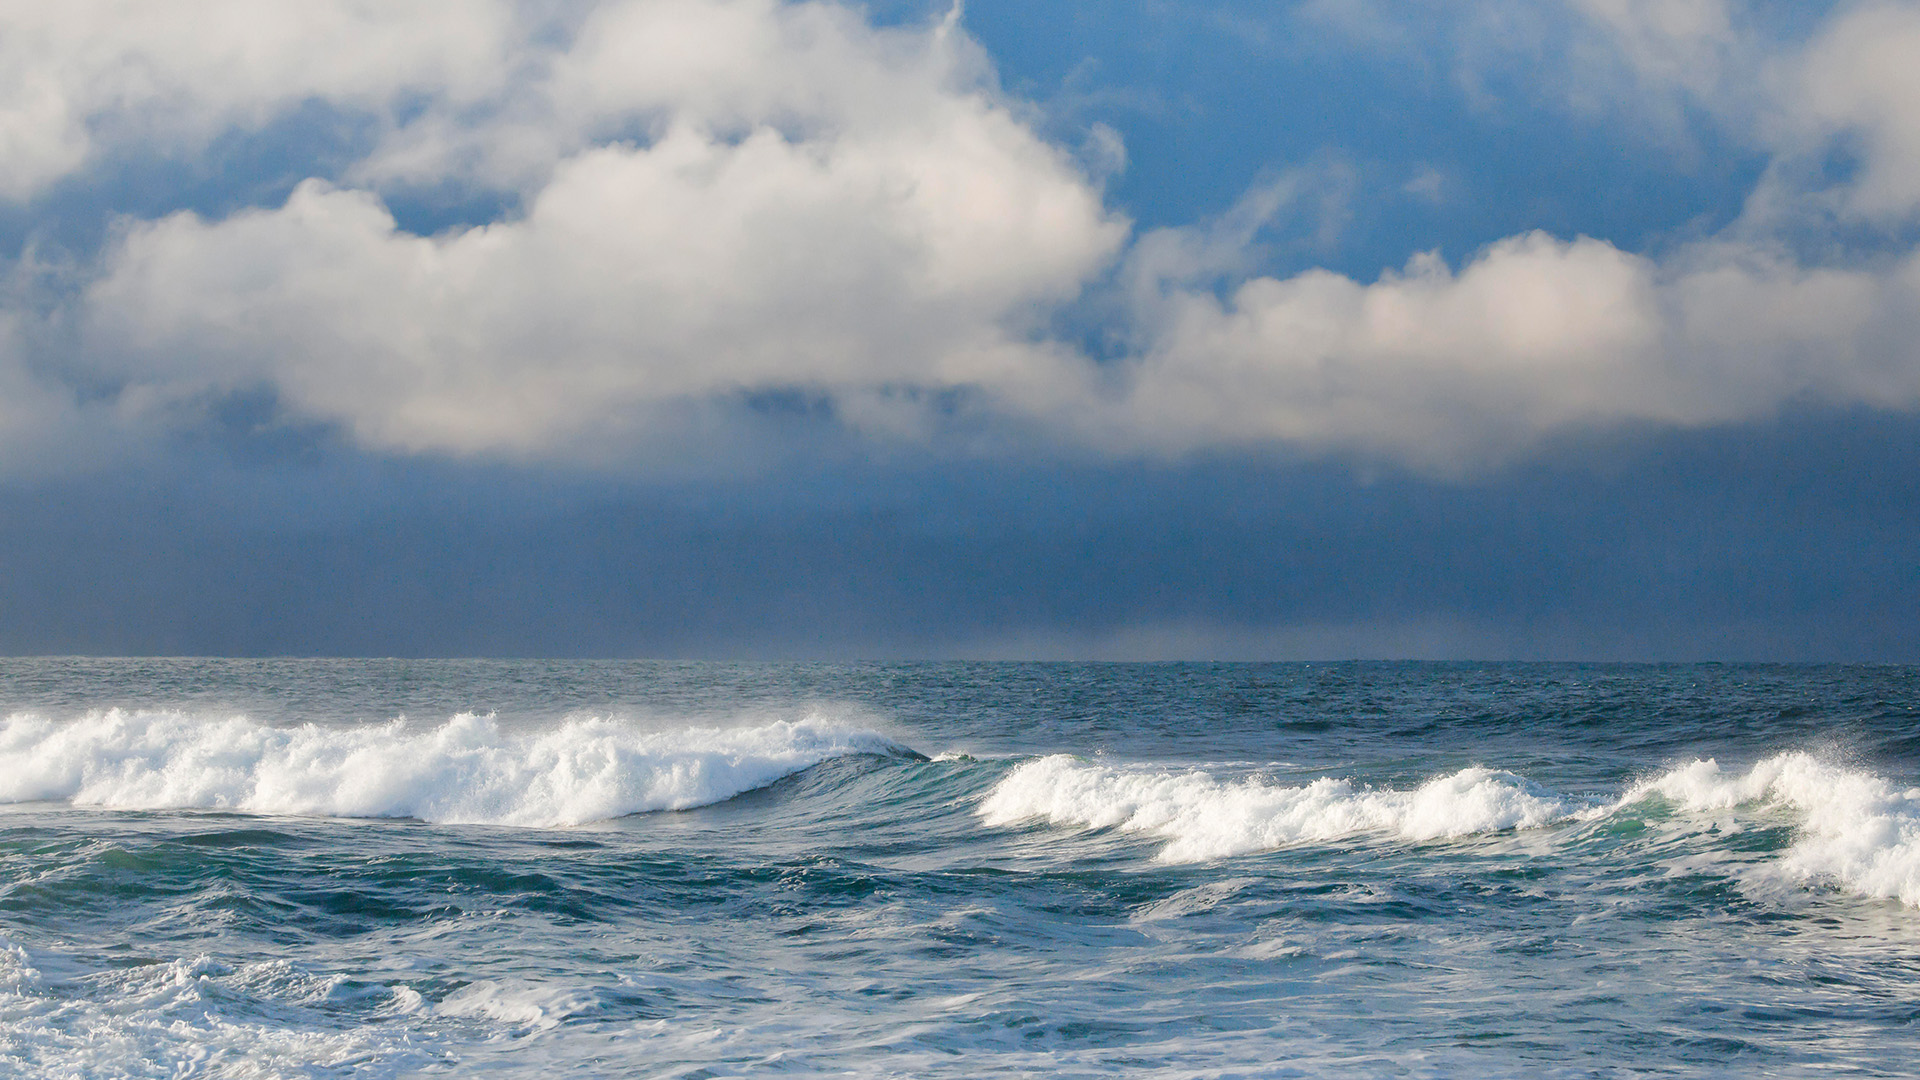 Wellen brechen auf offenem Wasser der Nordsee. | picture alliance / blickwinkel/P